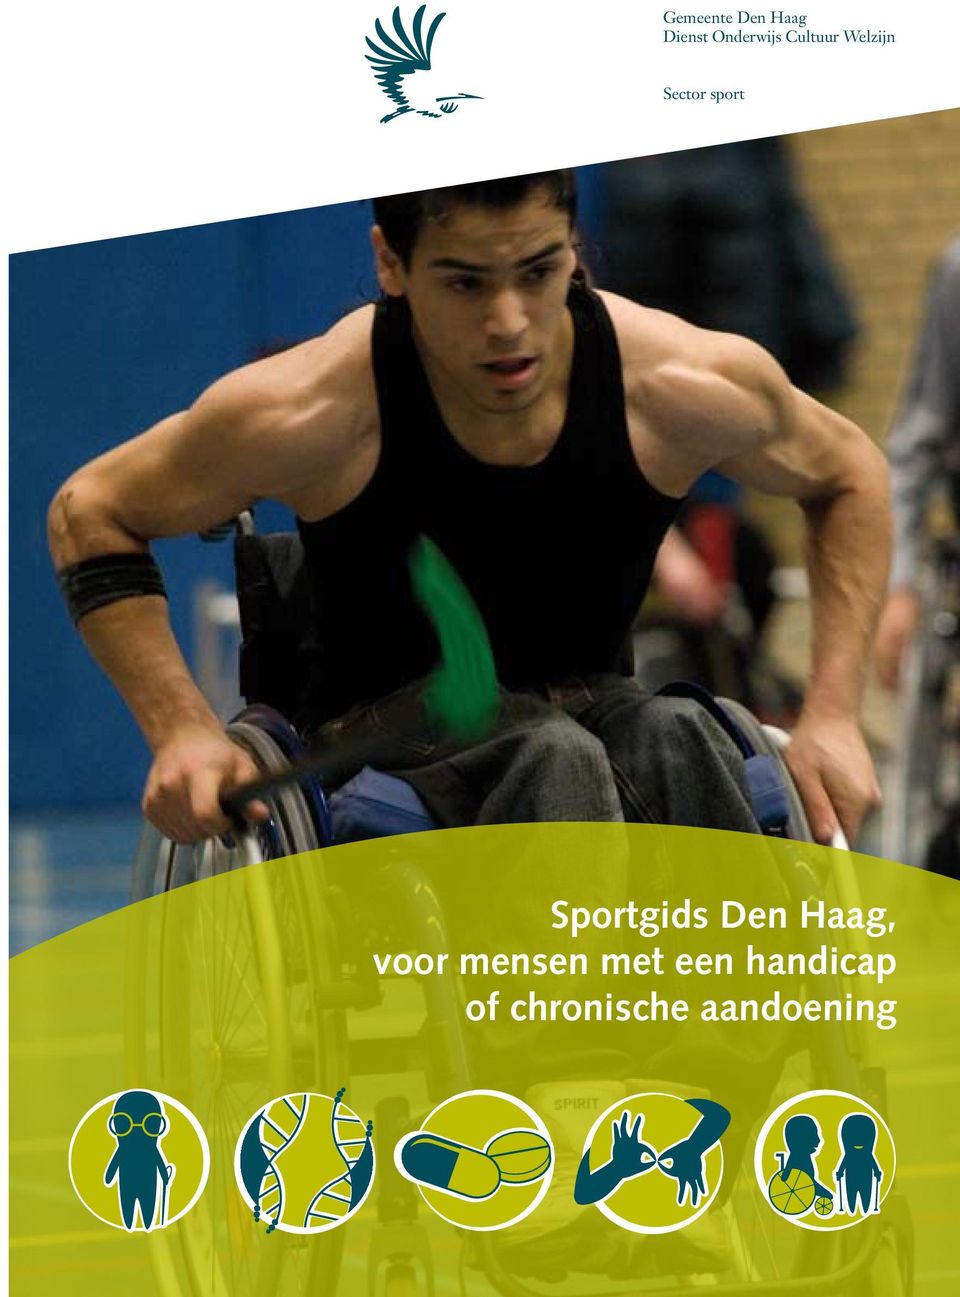 Sportgids Den Haag, voor mensen